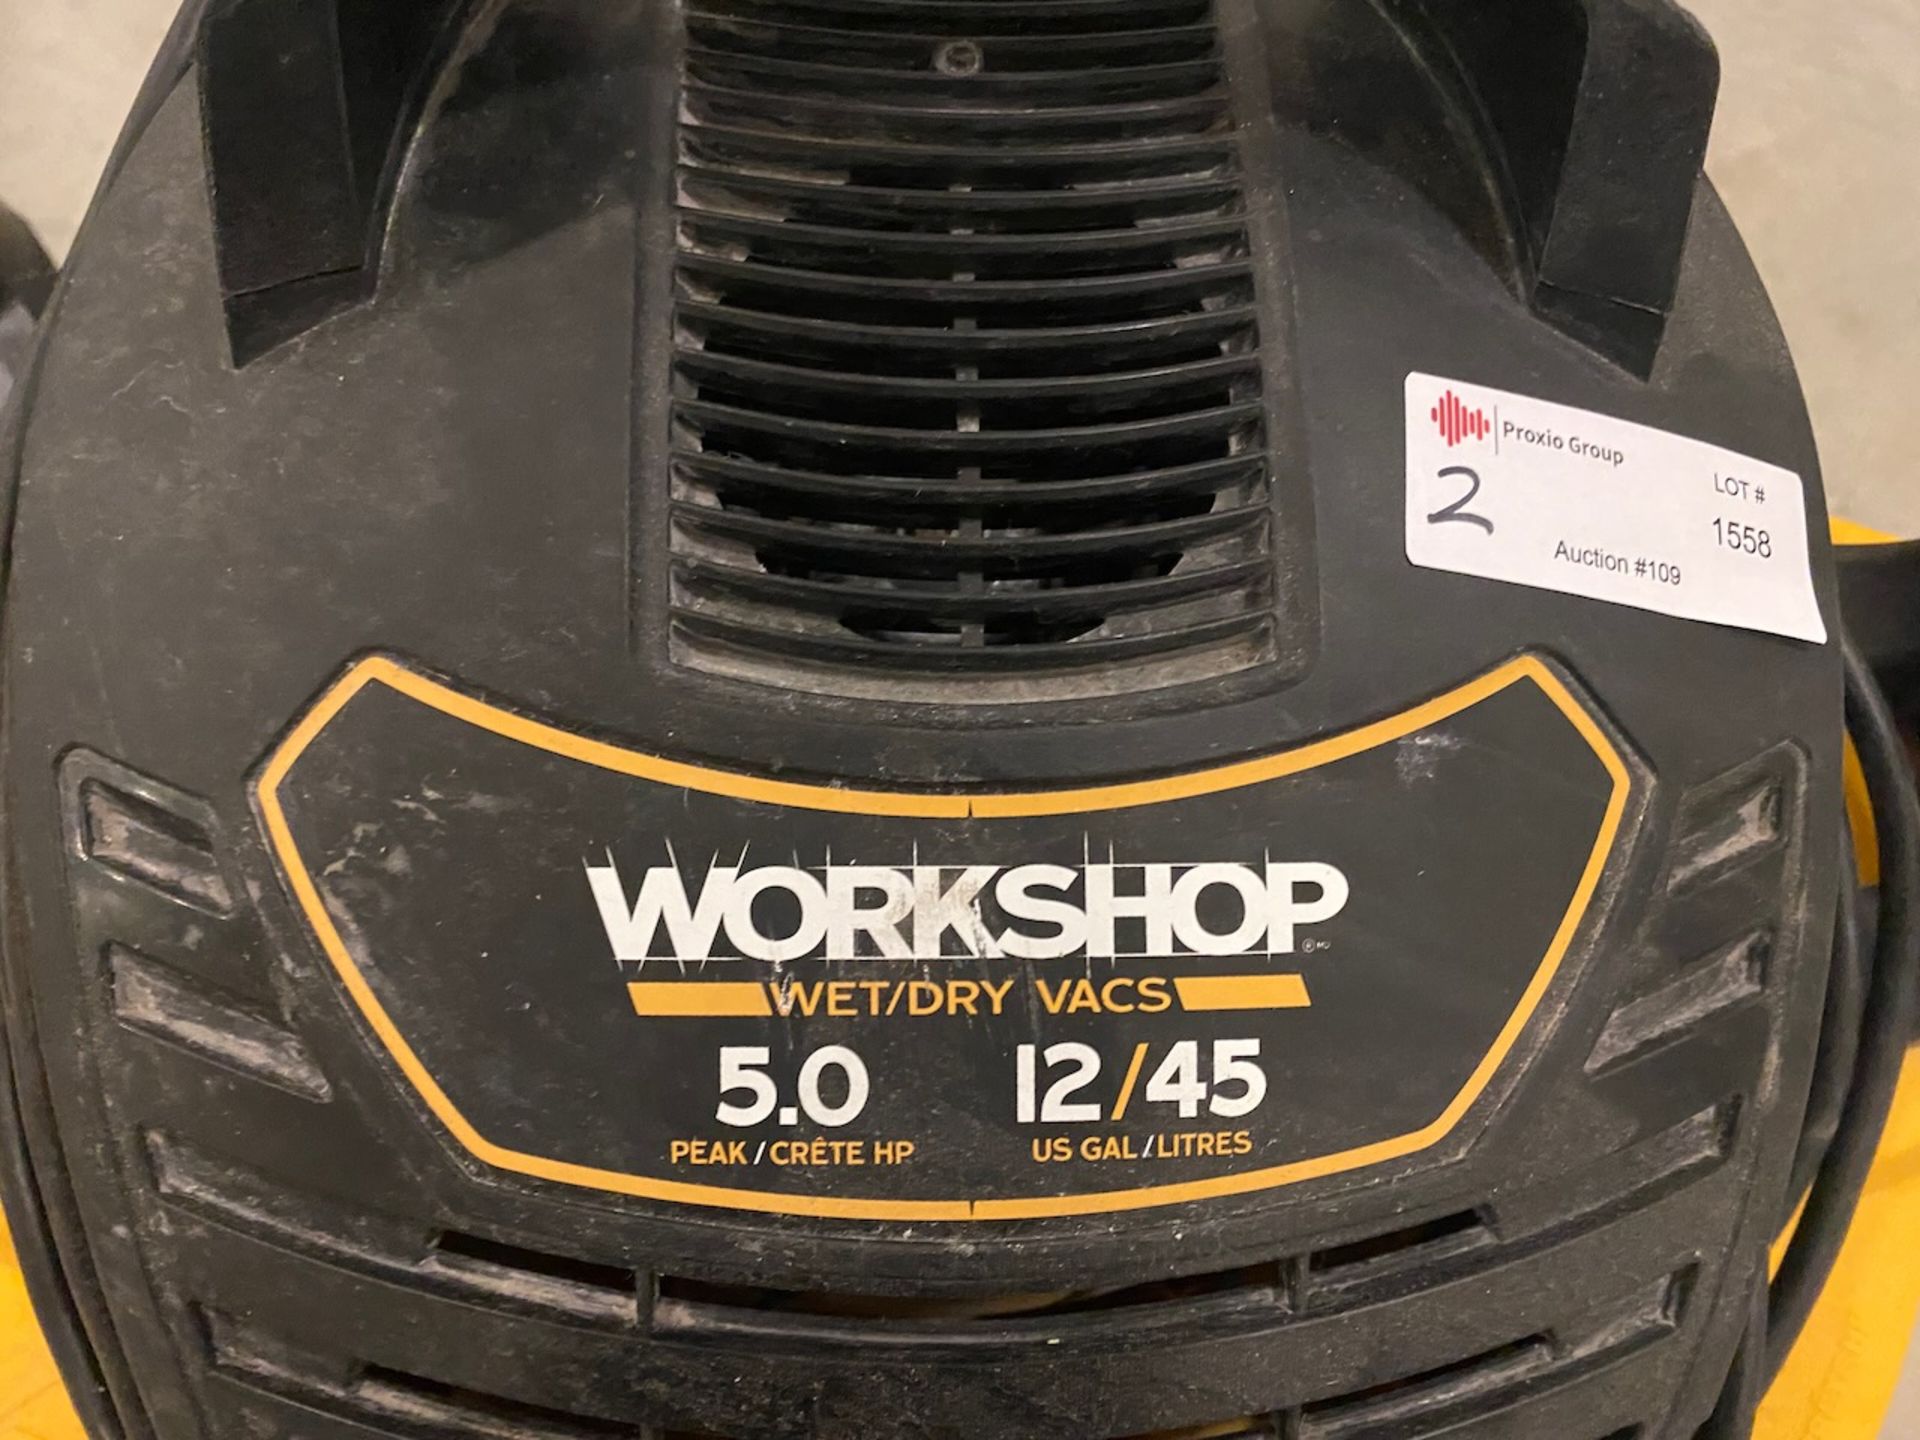 Workshop wet/dry vacuums - Image 2 of 5